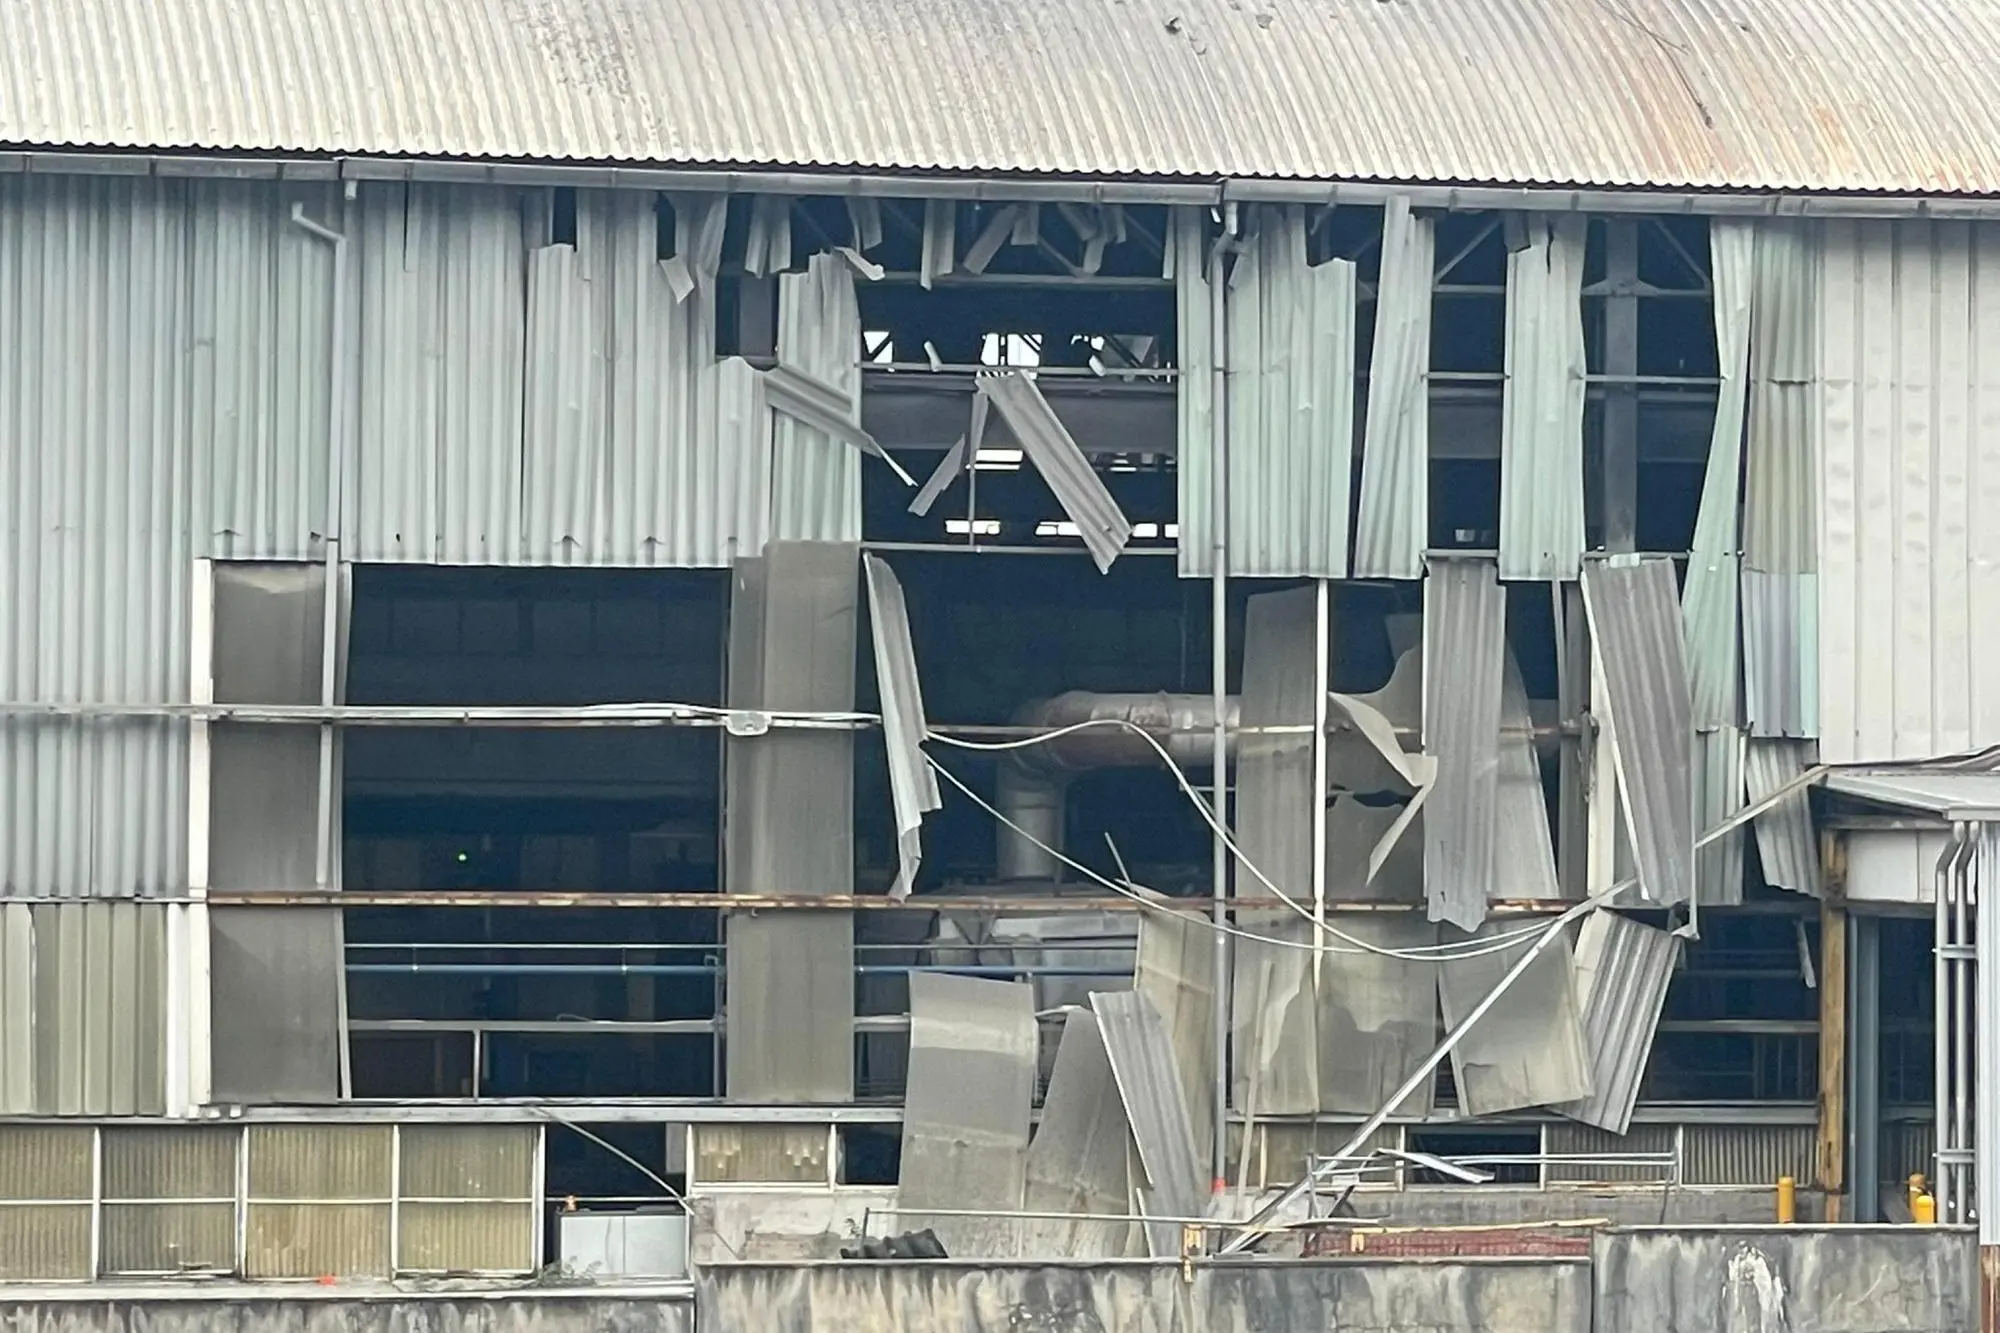 Una veduta esterna dello stabilimento Aluminium dove è avvenuta l'esplosione (Ansa)